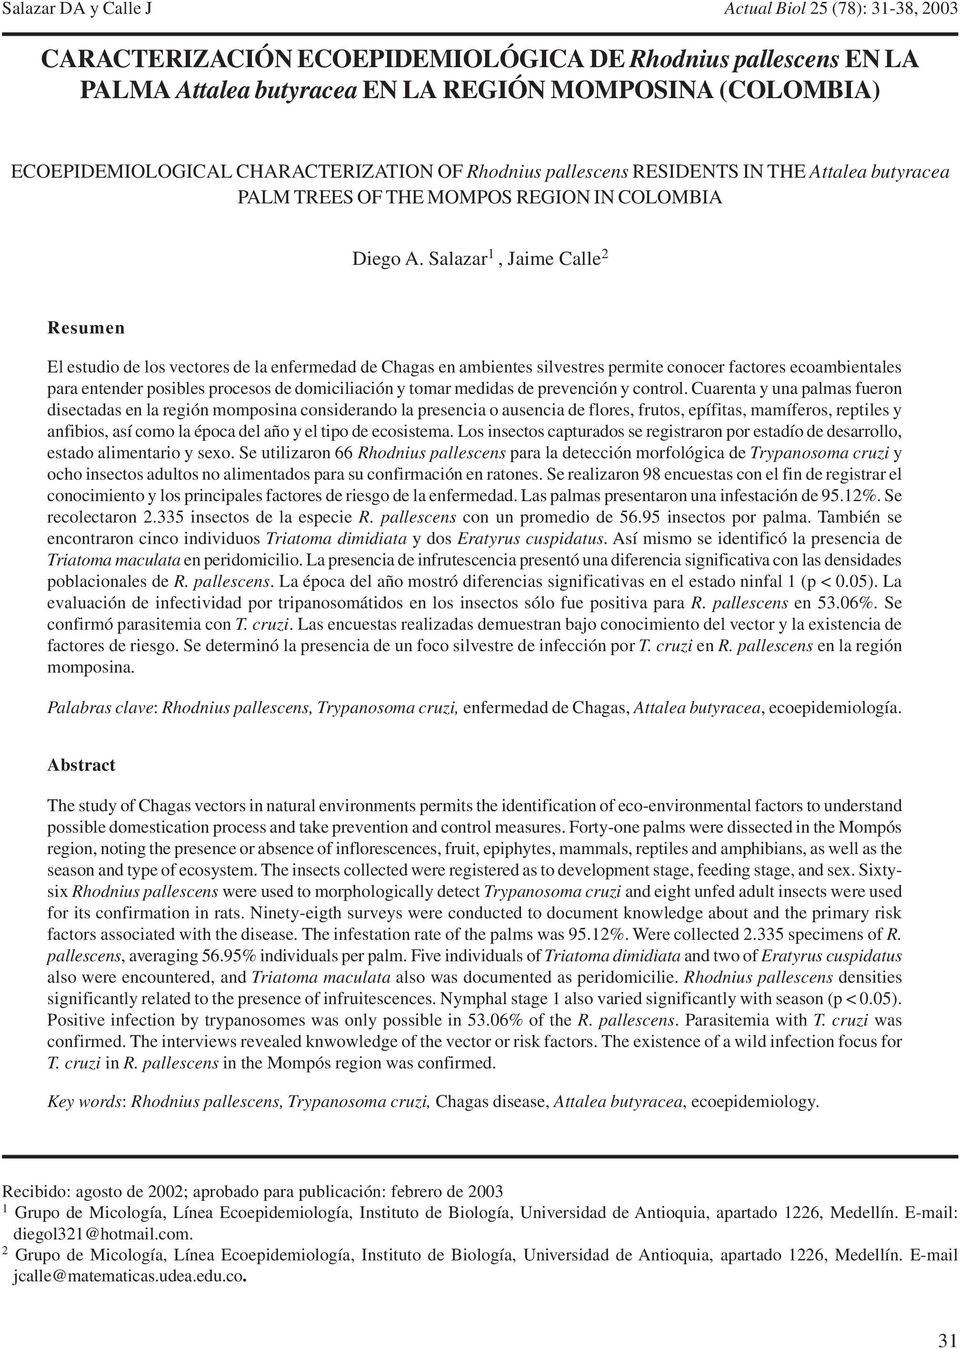 Salazar 1, Jaime Calle 2 Resumen El estudio de los vectores de la enfermedad de Chagas en ambientes silvestres permite conocer factores ecoambientales para entender posibles procesos de domiciliación